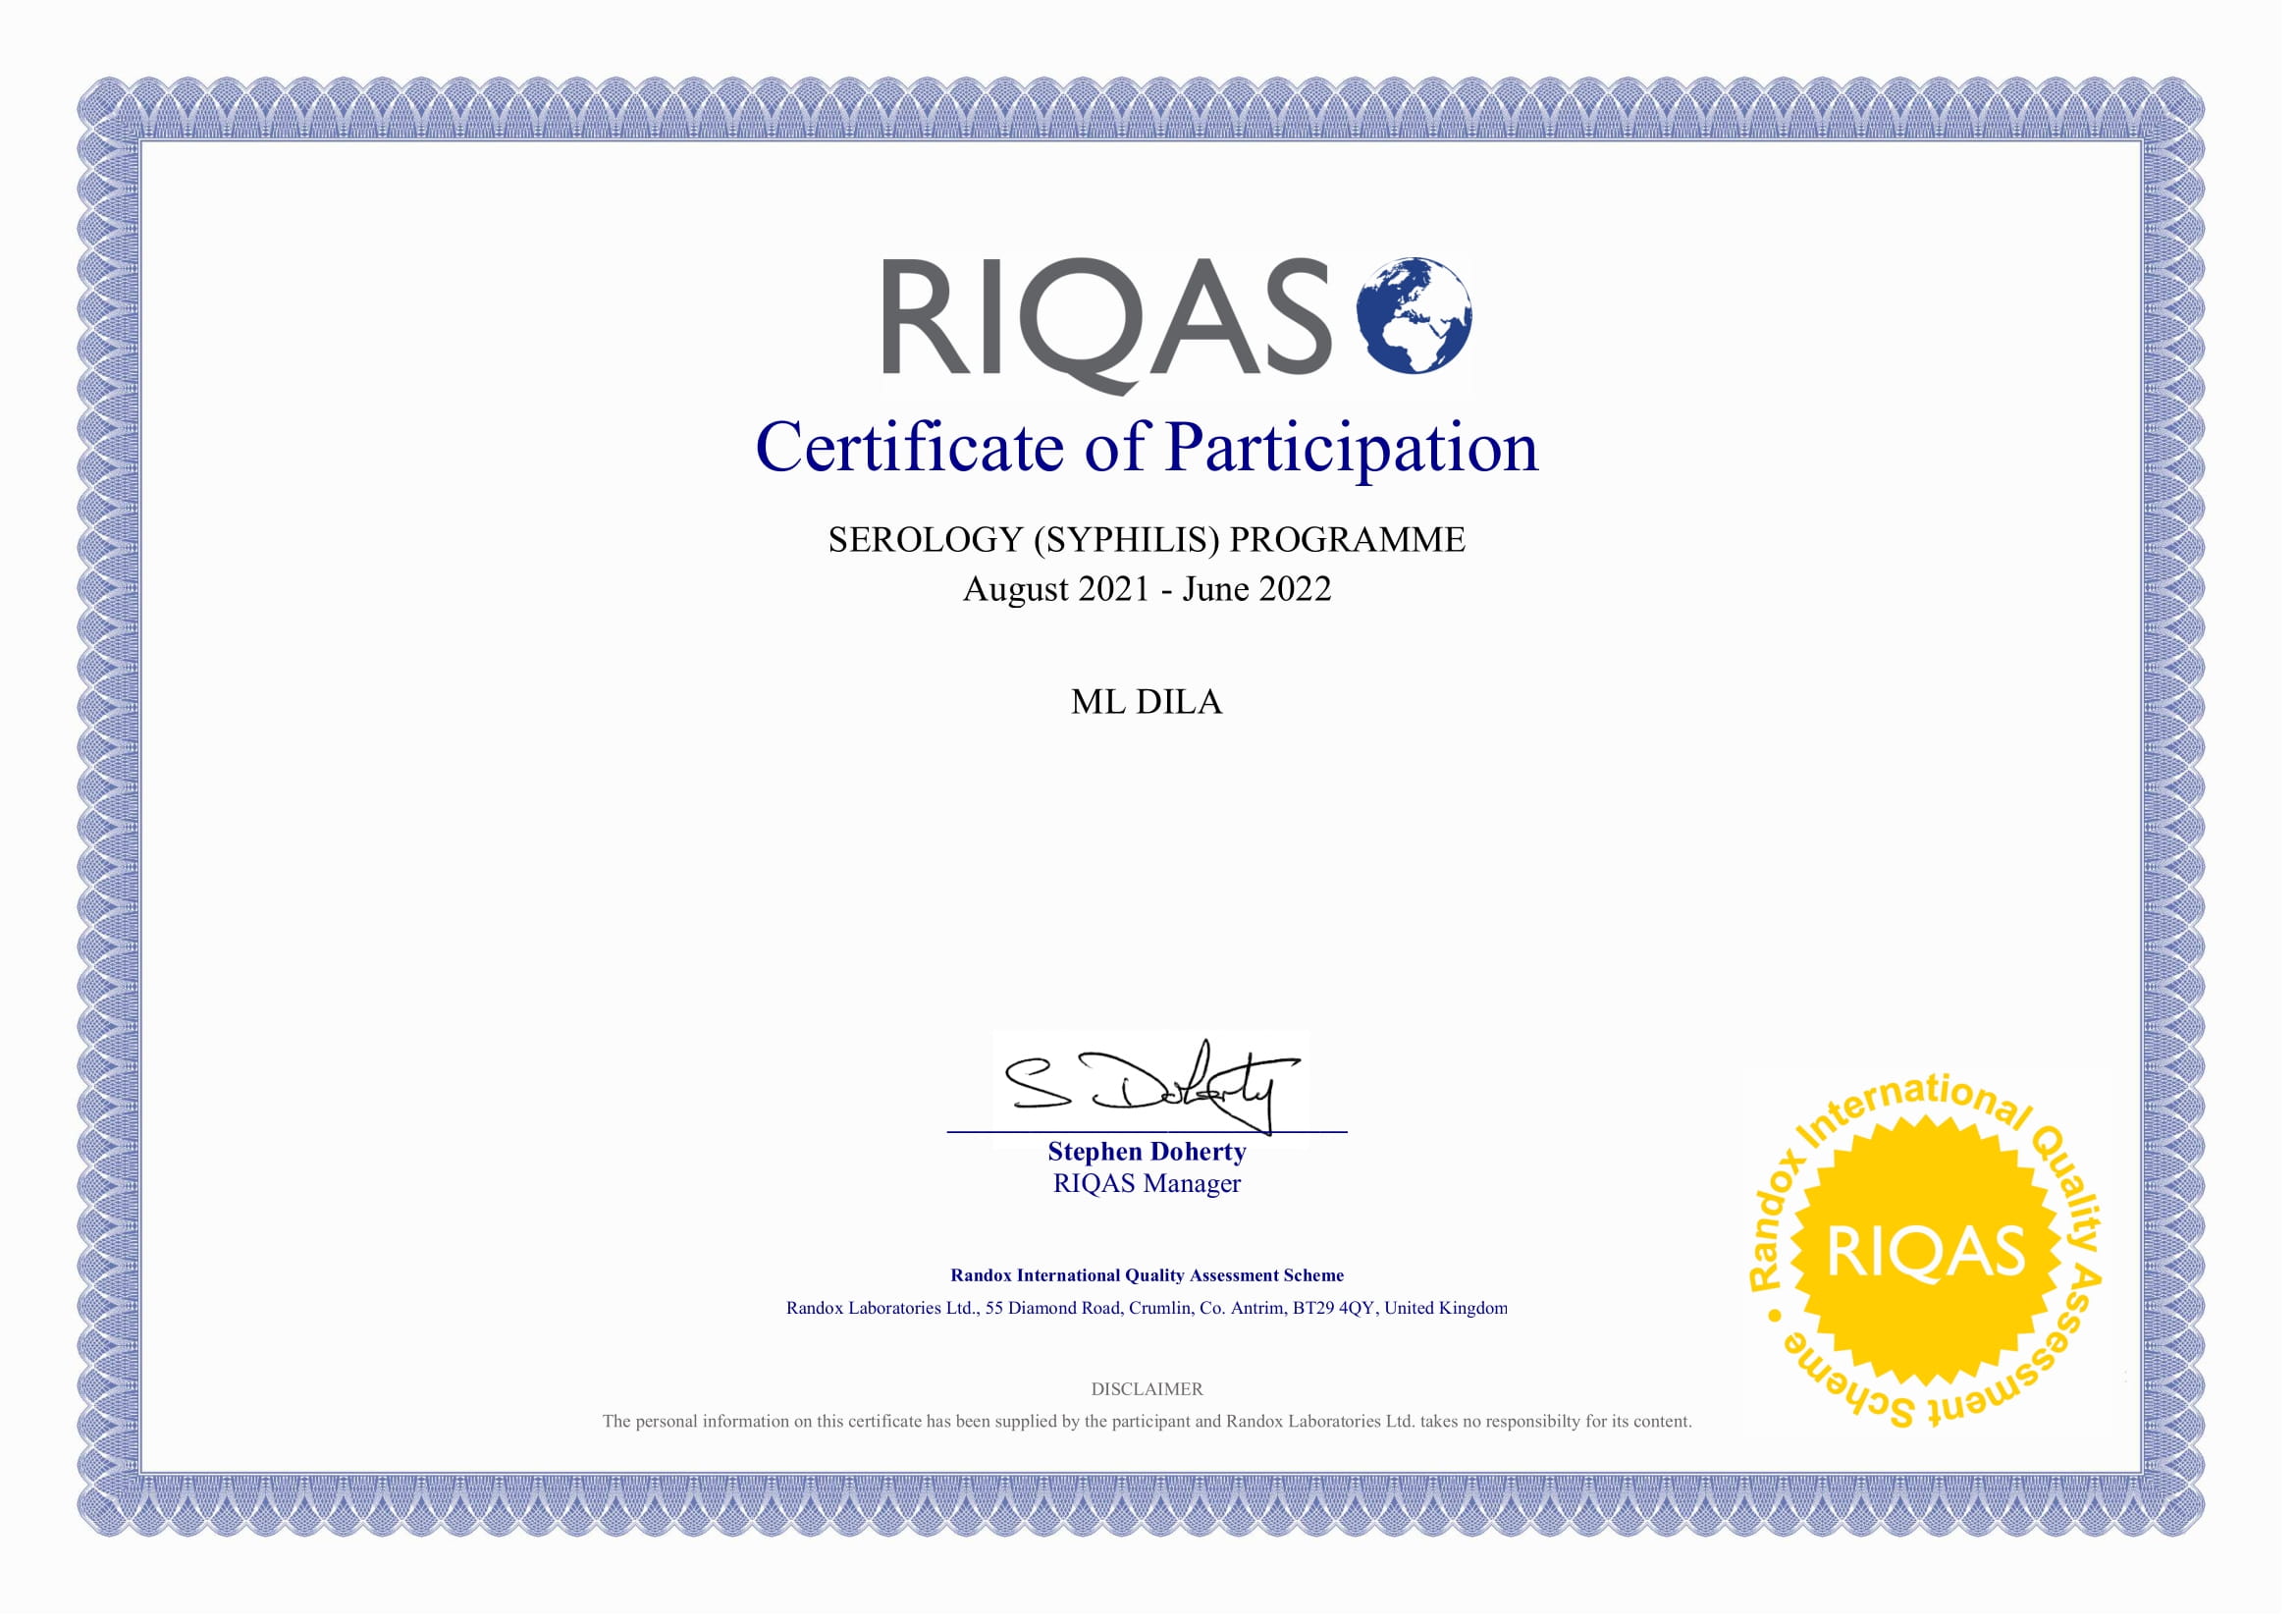 Фото - Сертифікат участі в програмі зовнішньої оцінки якості RIQAS (Серологія_Сифіліс)